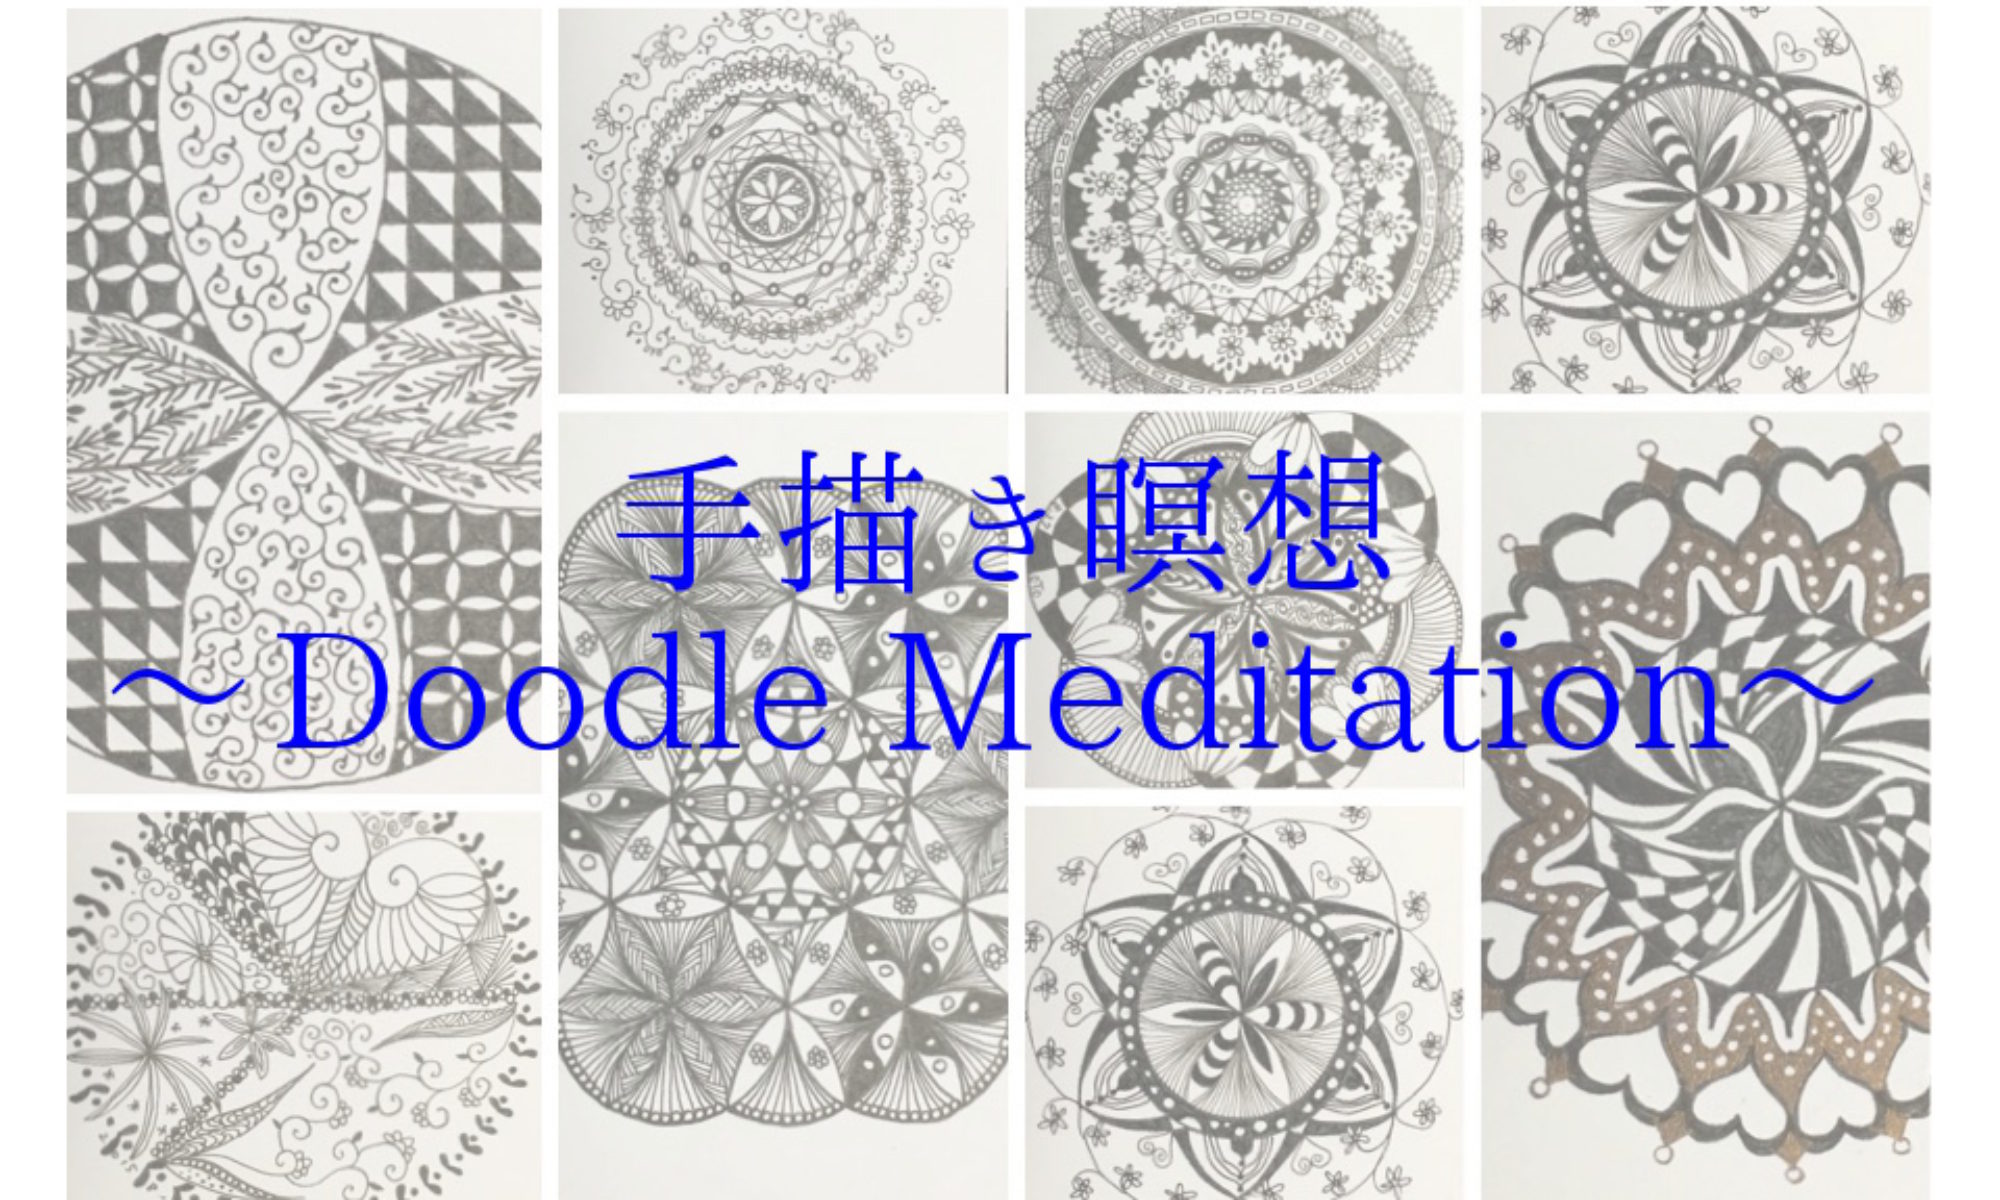 Doodle Meditation